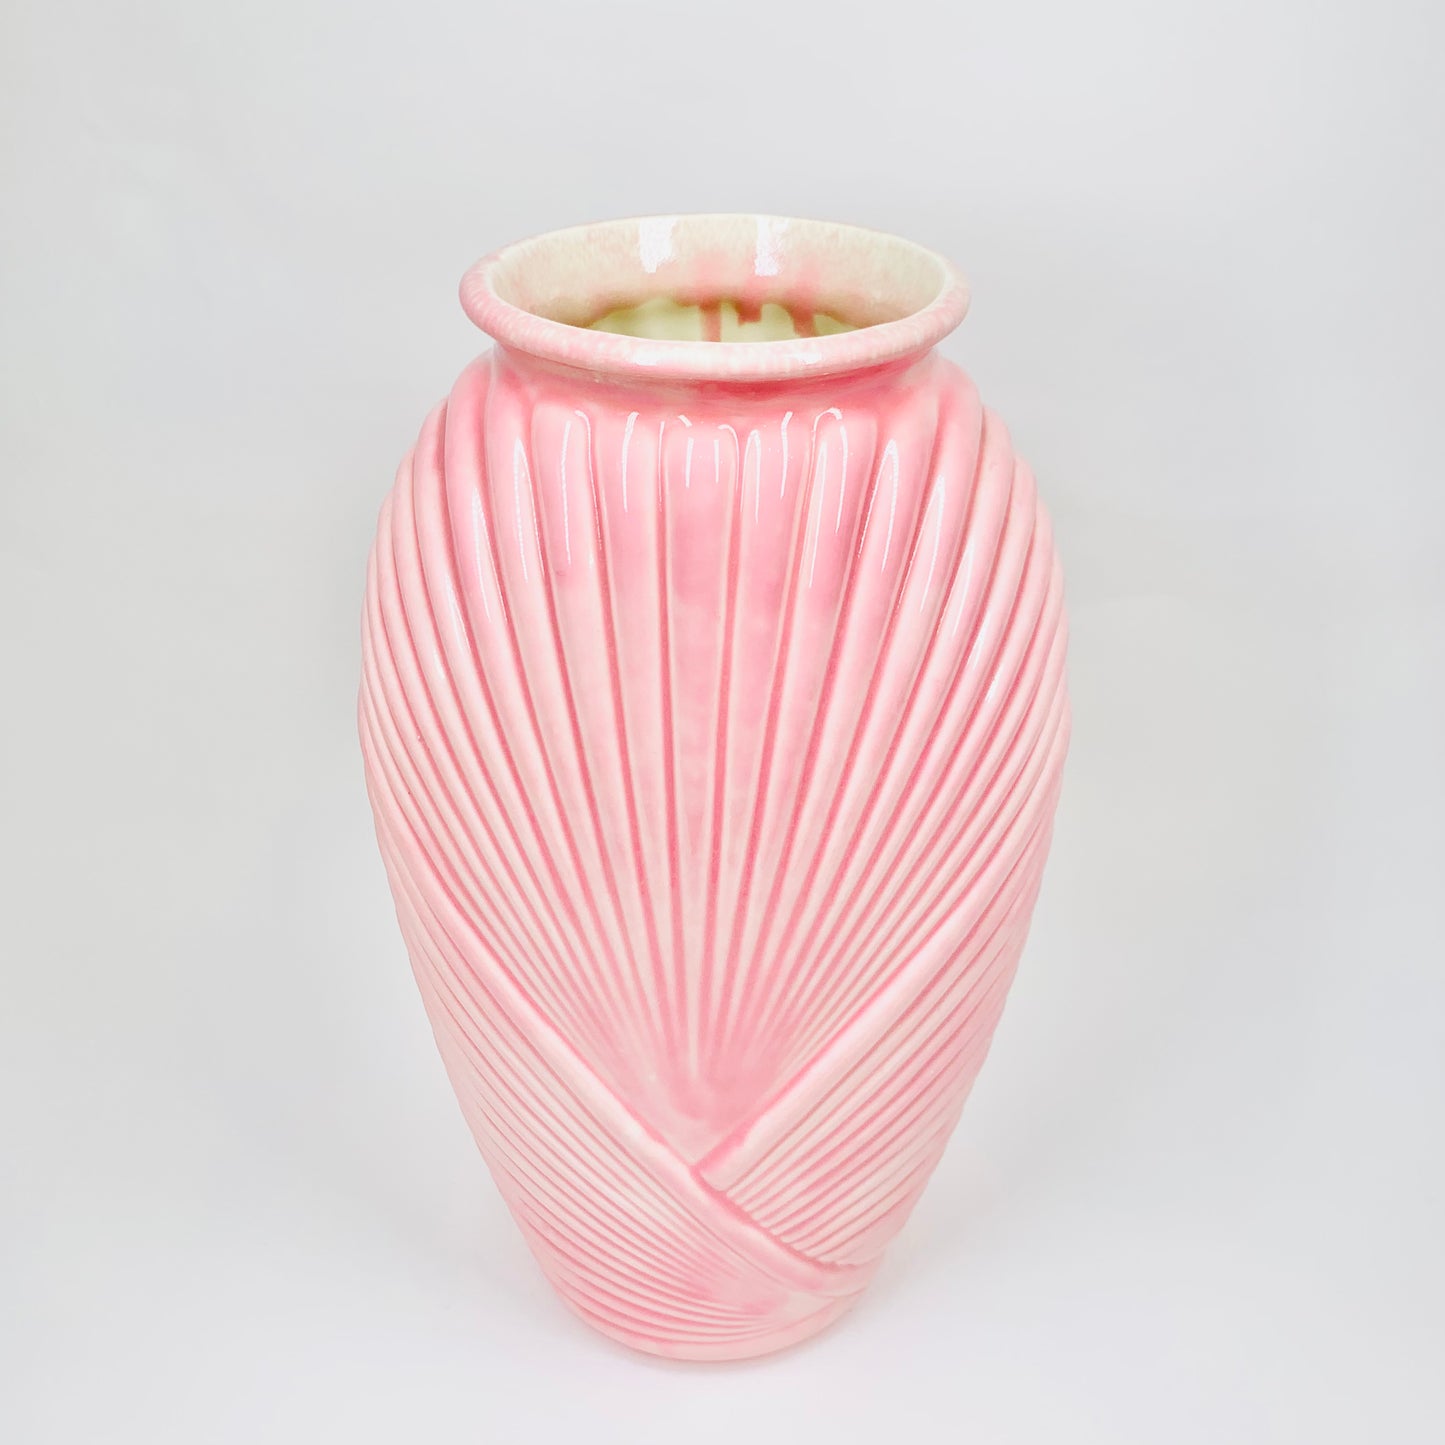 Rare hand painted 1980s Art Deco revival pink porcelain vase